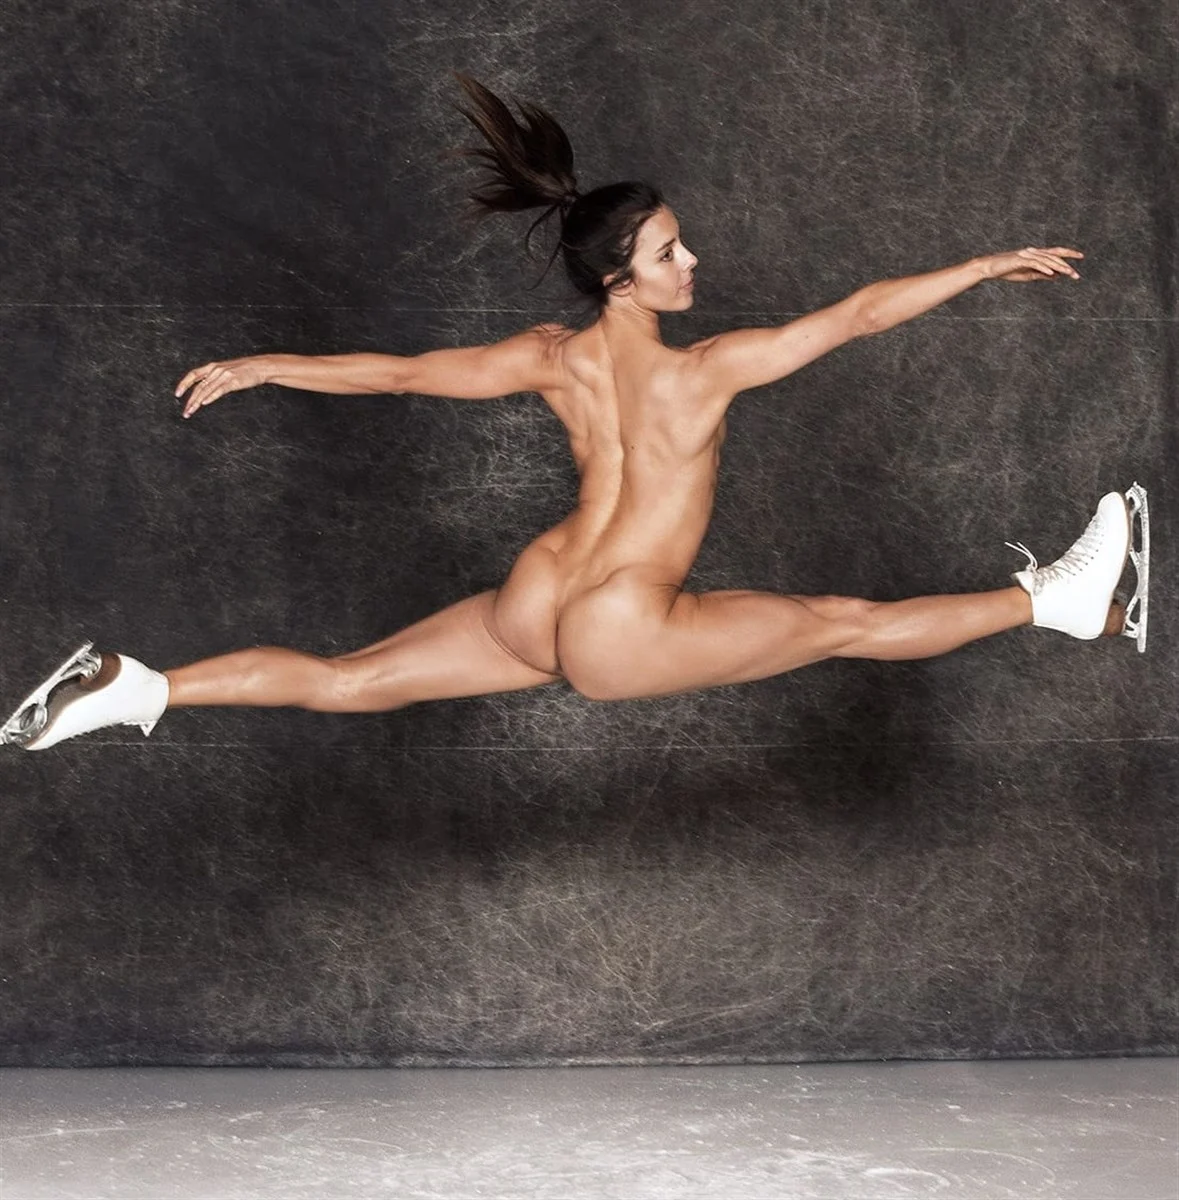 Nude Female Athletes Photos u0026 Videos - Celeb Masta